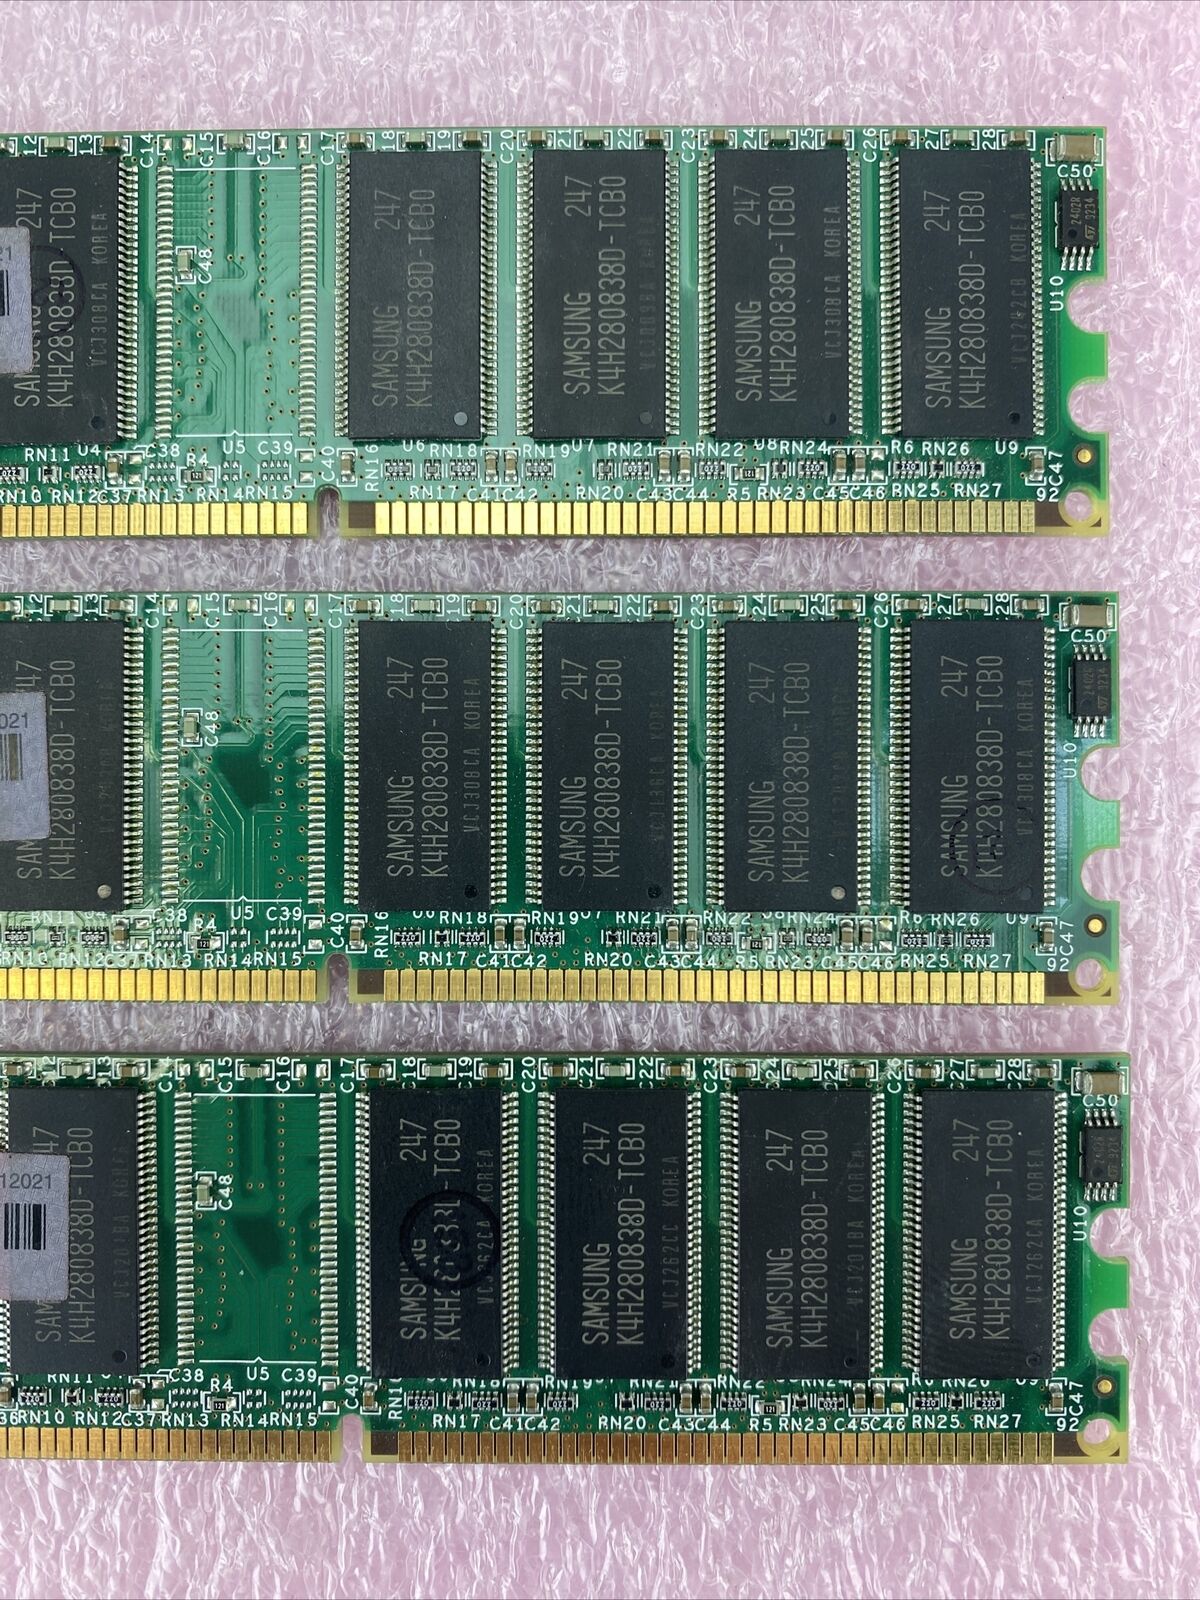 Nanya NT128D64SH4B1G-75B + Compaq PF0211264702 PC2100U DDR 266MHz CL2.5 128MB